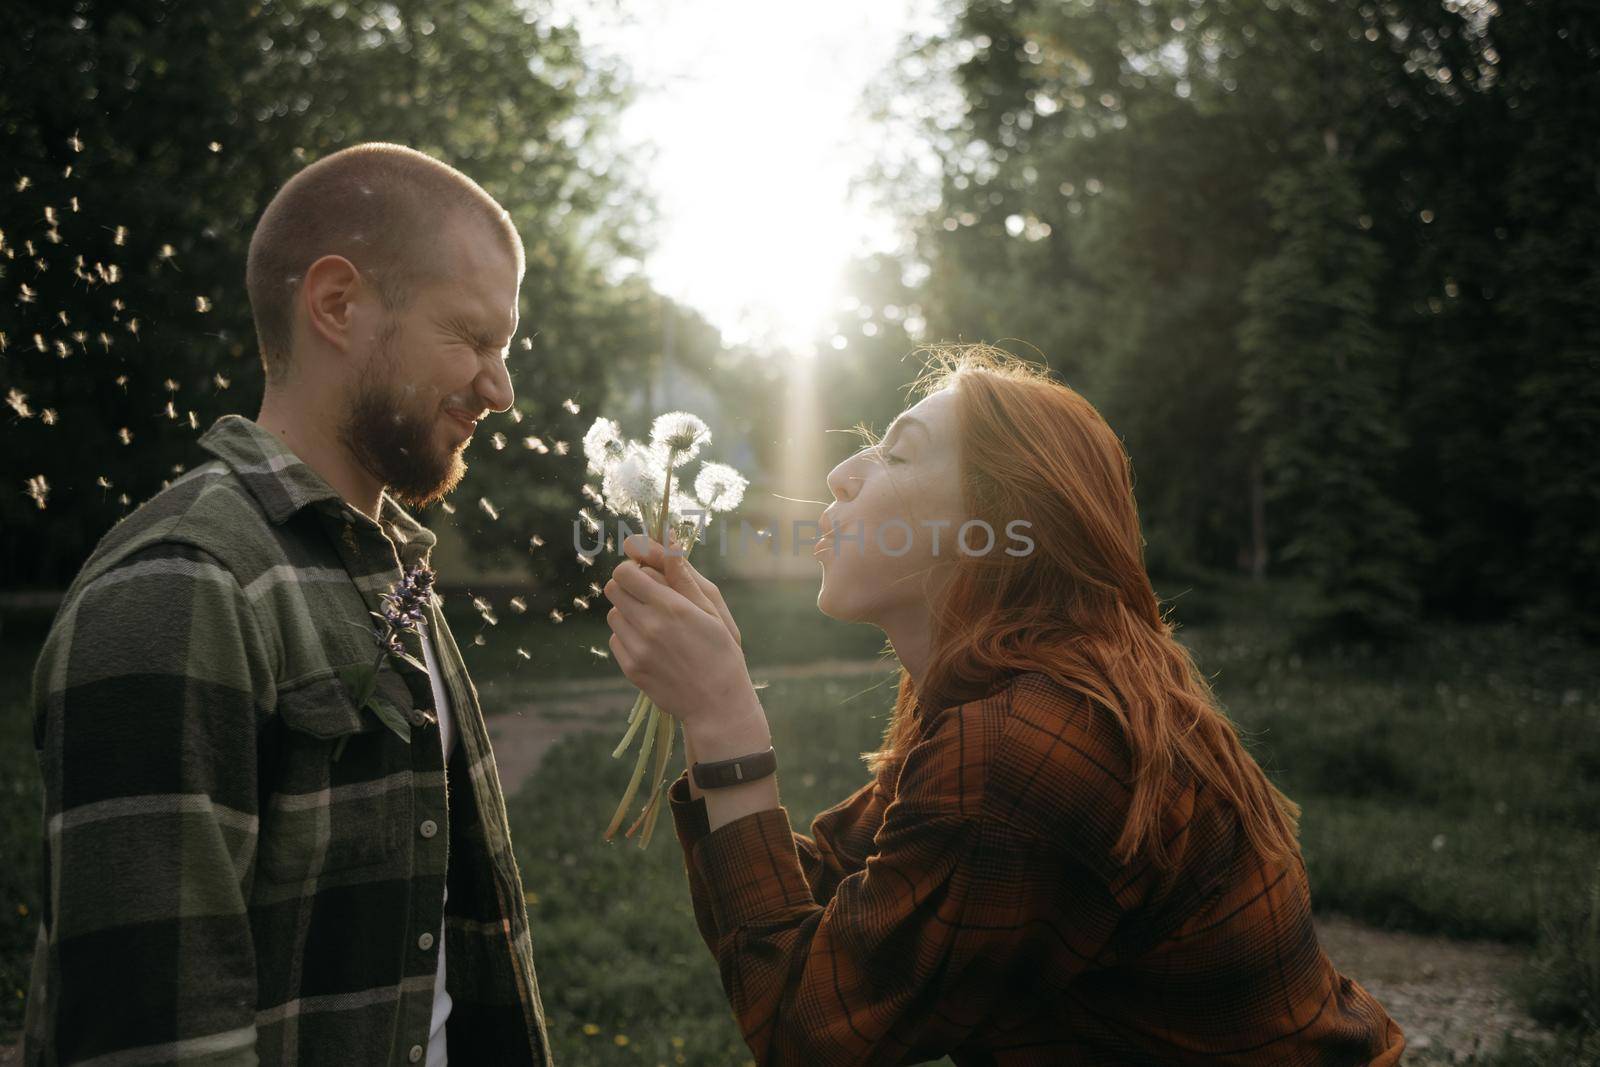 red girl blows a dandelion on her boyfriend by Symonenko